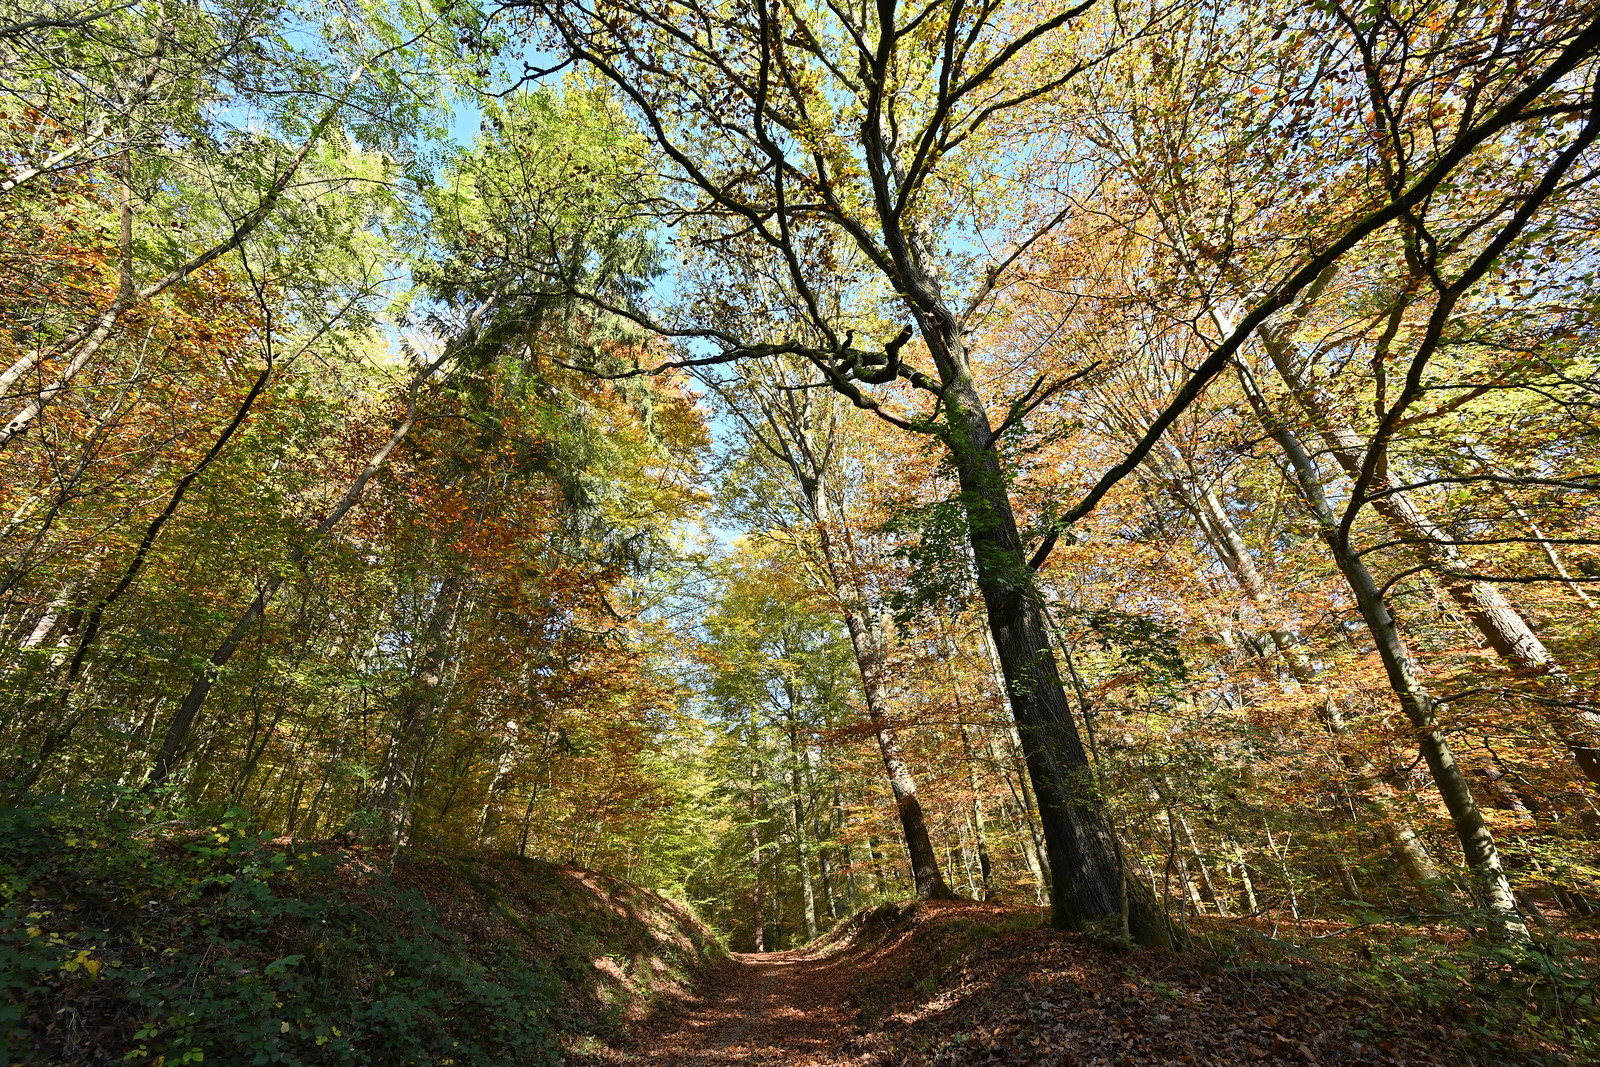 Autumn forest - Spitzberg near Tübingen (Germany)